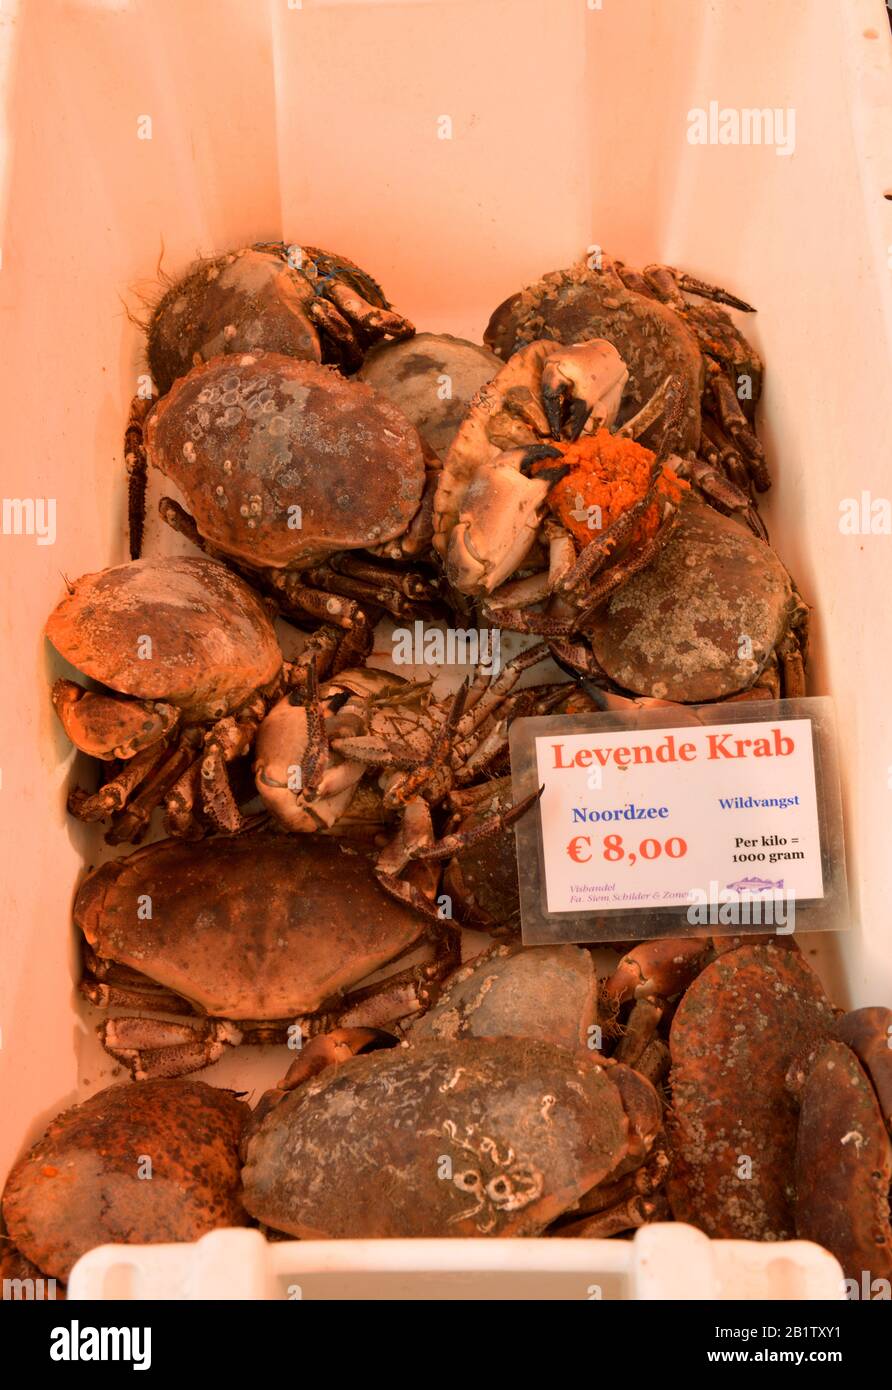 Krabben, Fischhandel, Albert Cuyp Markt, Albert Cuypstraat, Amsterdam, Niederlande Foto de stock